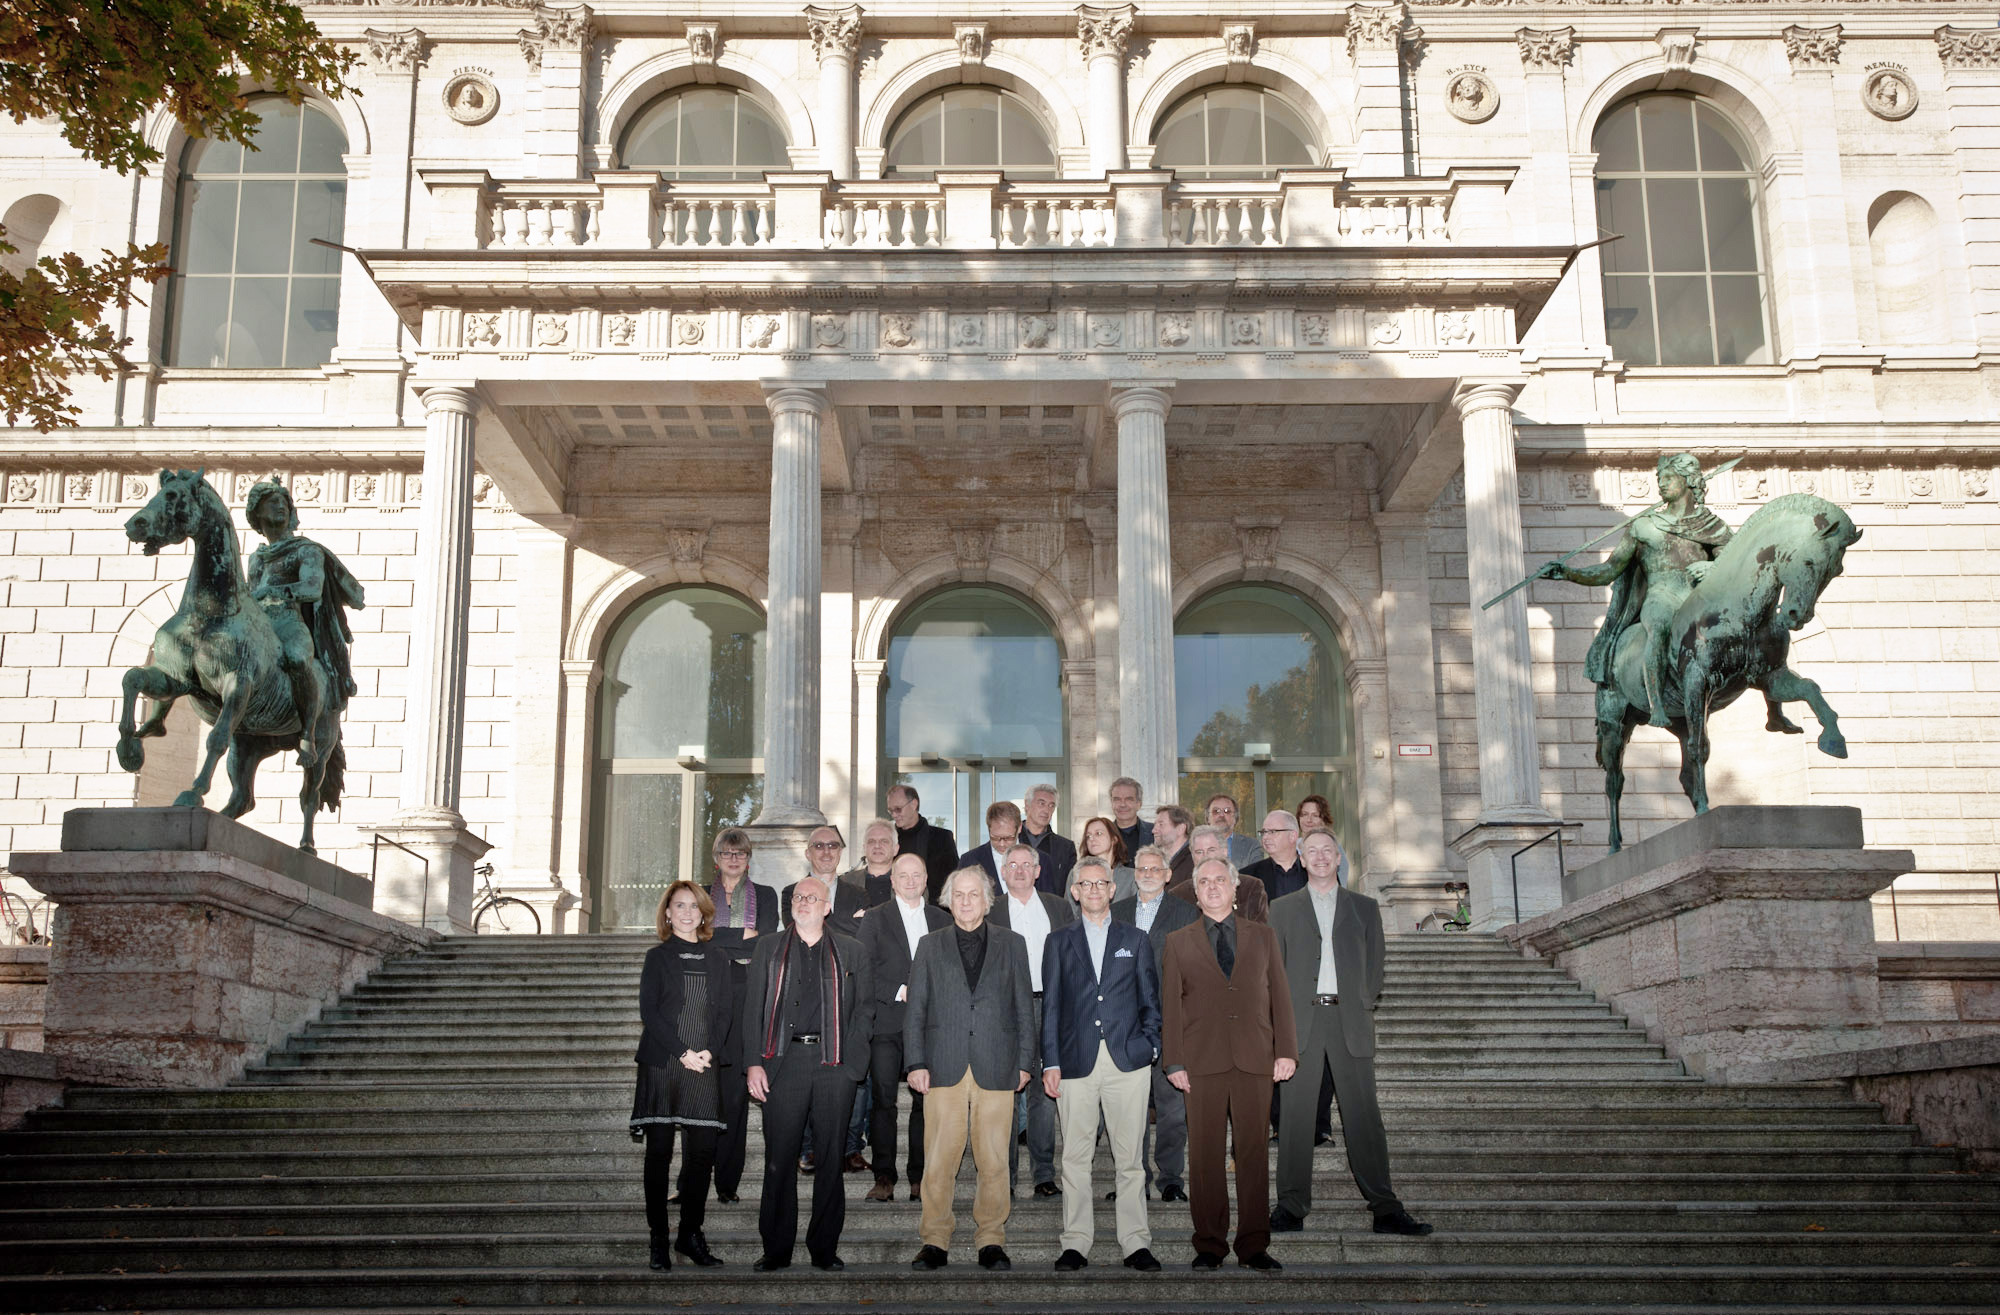 Zu sehen ist ein Gruppenfoto der KHK auf der Treppe vor dem Altbau der AdBK München. Links und rechts der Treppe sind zwei Reiterstatuen zu sehen